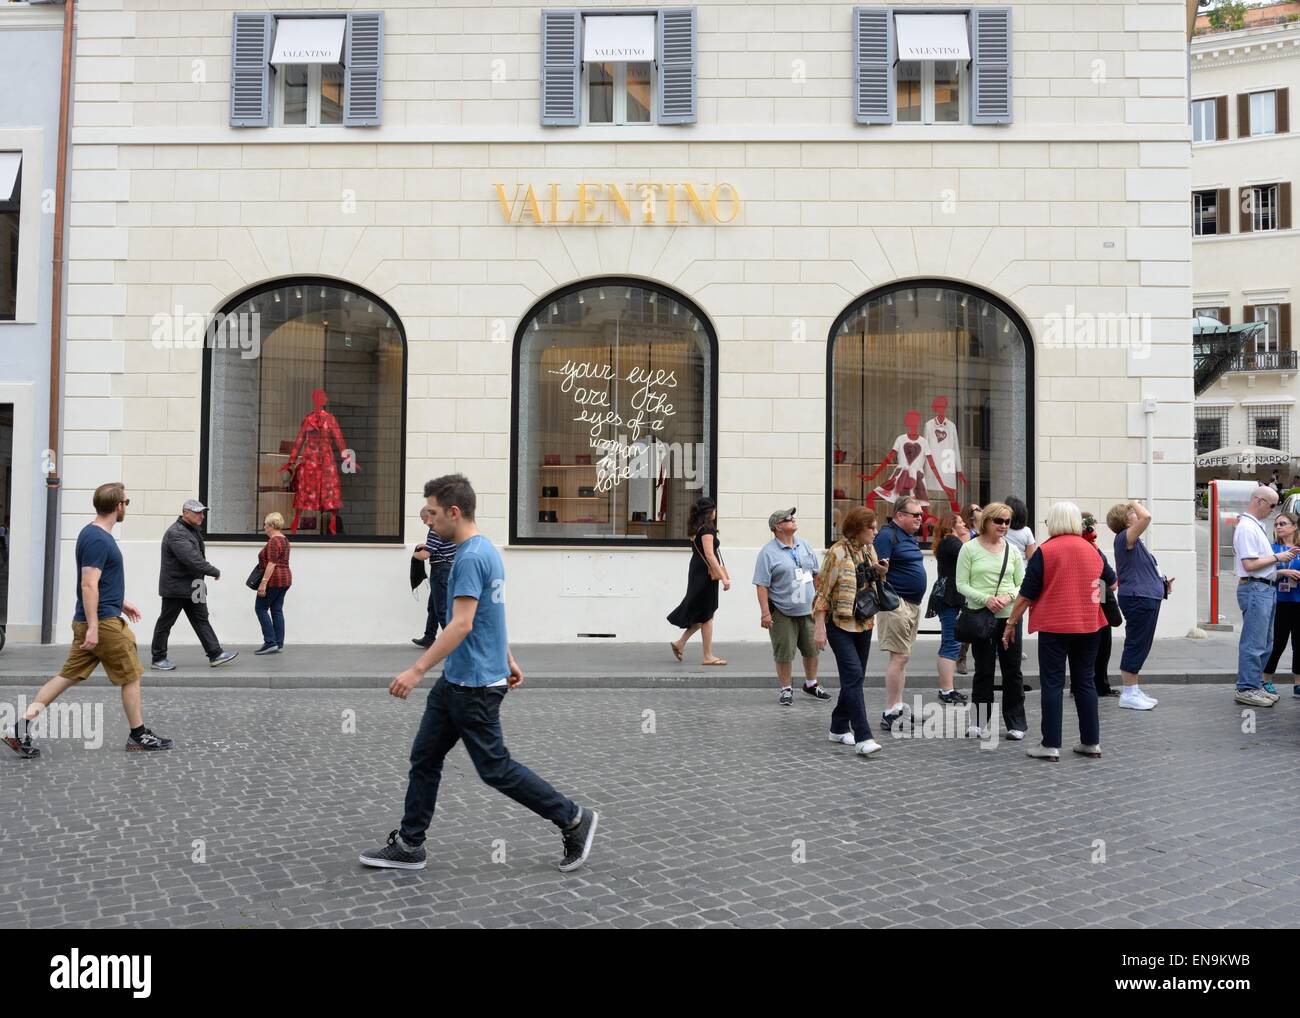 Valentino-Bekleidungsgeschäft auf der PIAZZA DI SPAGNA, Rom, Italien. Stockfoto